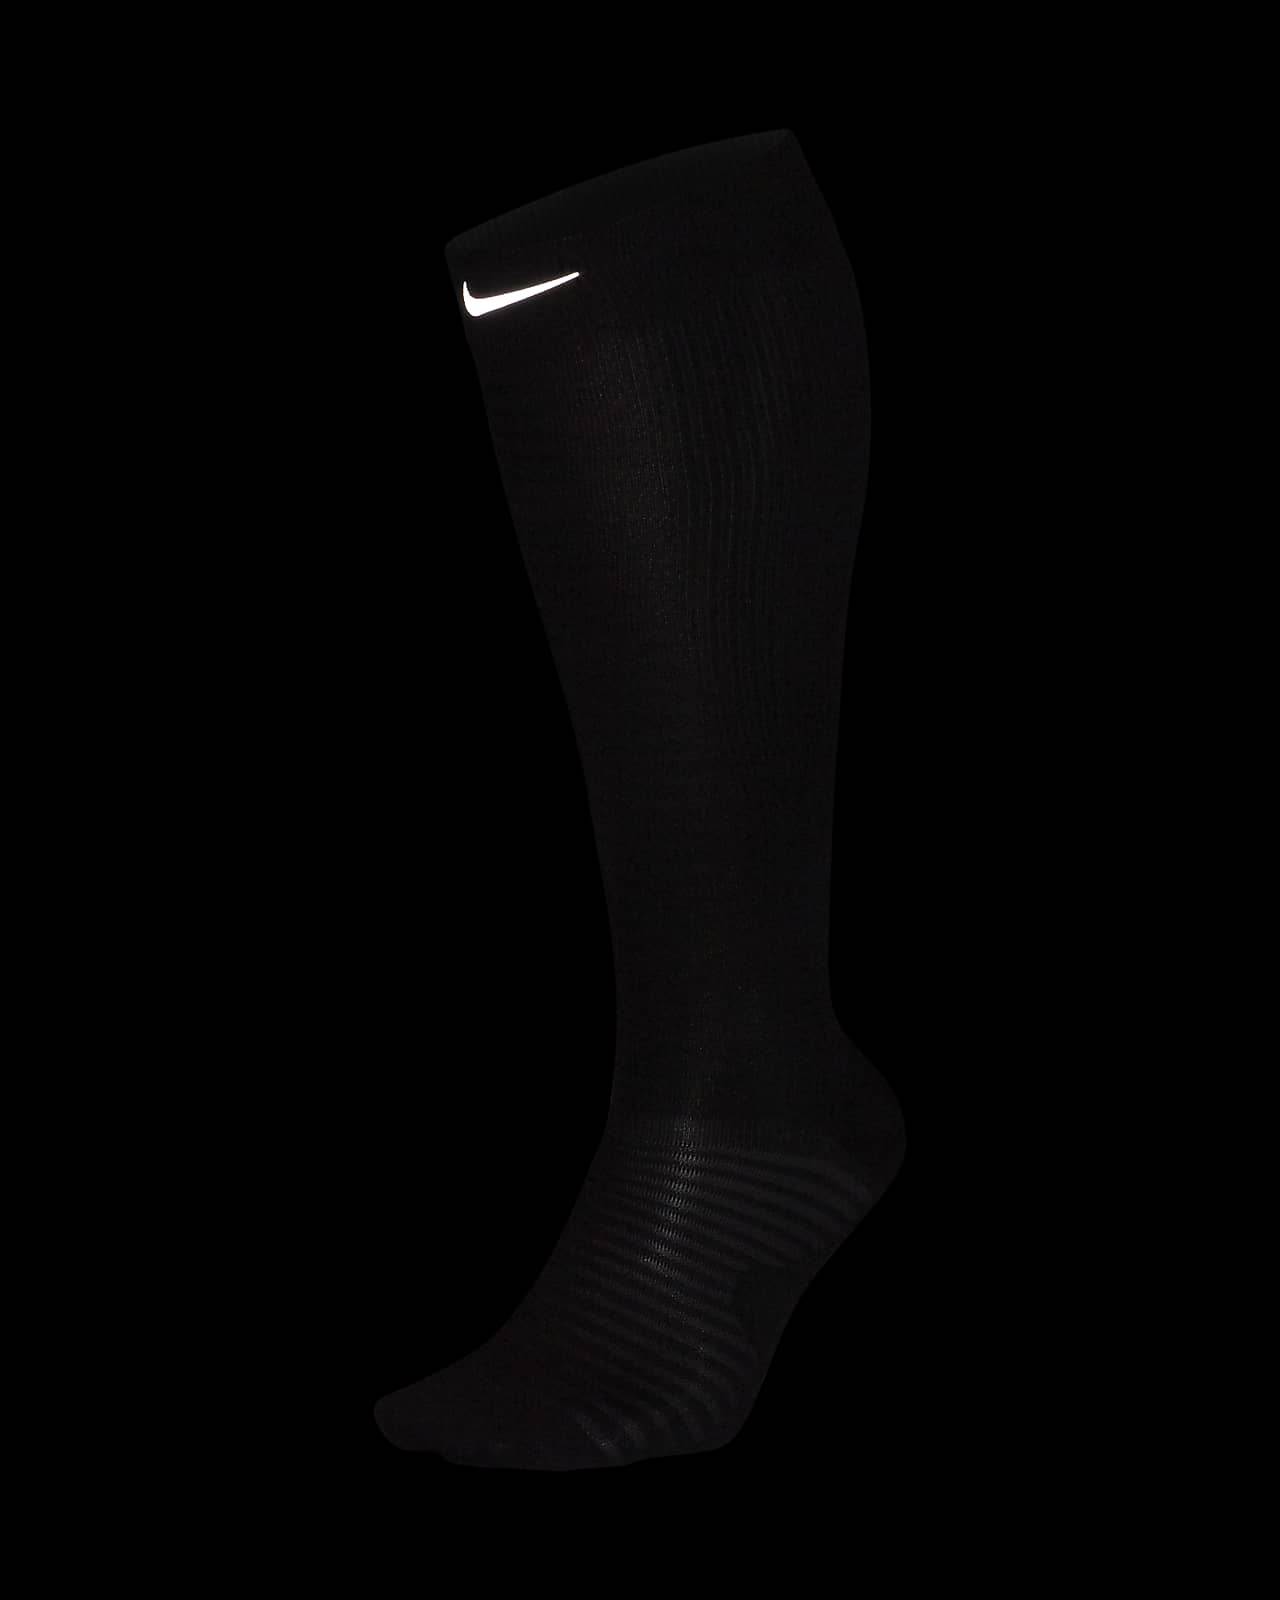 Nike Spark Lightweight Over-The-Calf Running Socks. Nike.com